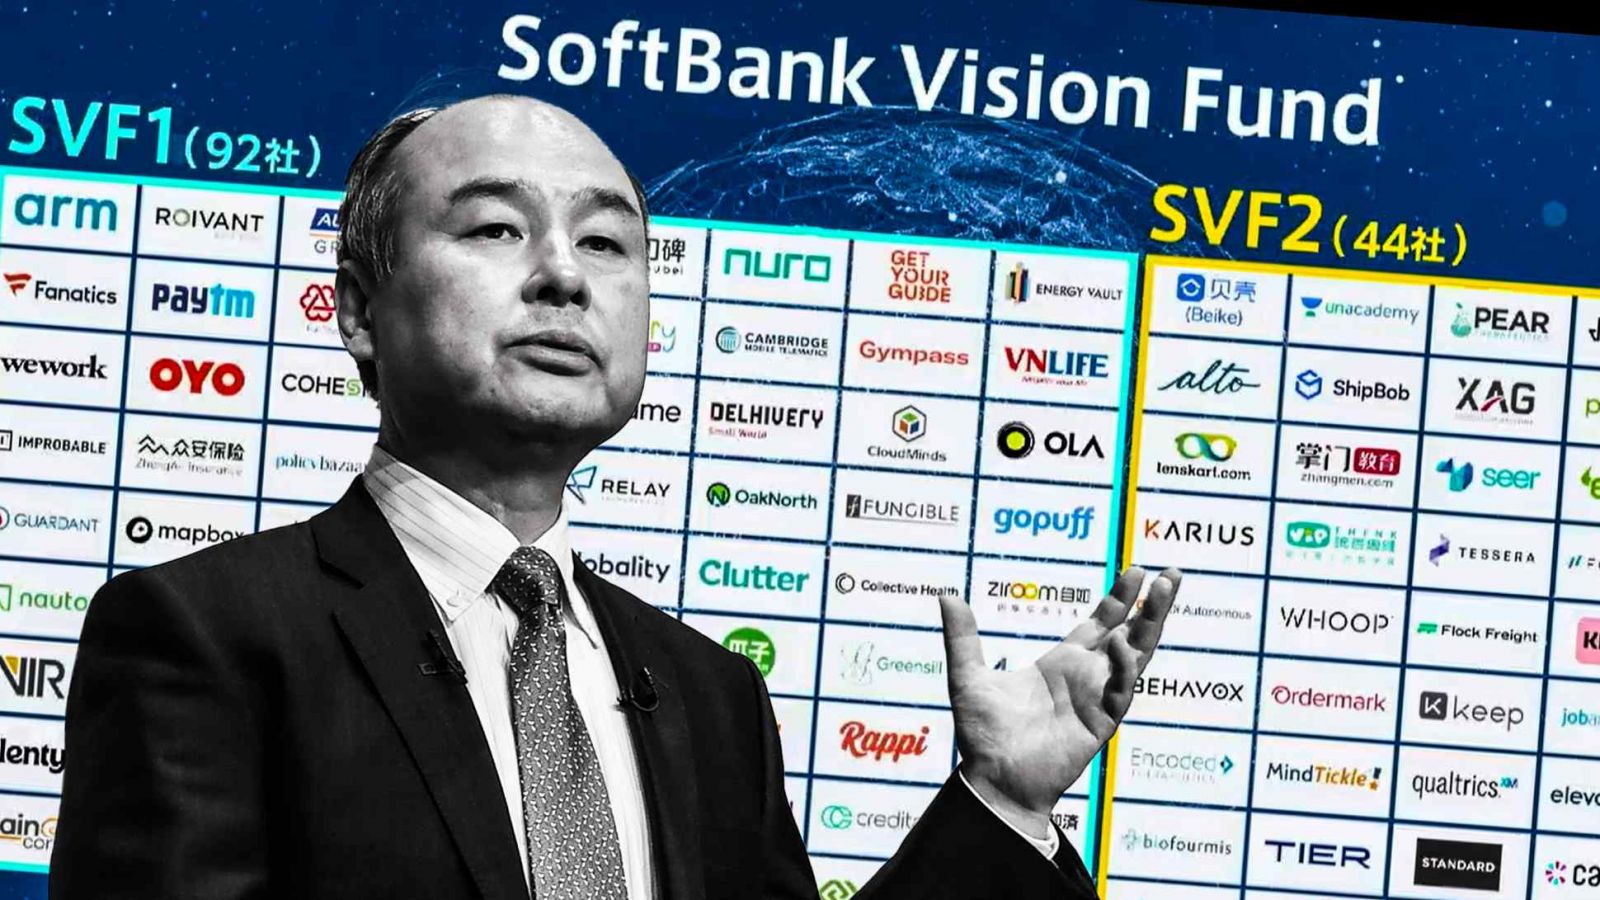 Masayoshi Son, một ông trùm viễn thông trở thành nhà đầu tư công nghệ, đang chuyển sự chú ý của mình sang các công ty internet tập trung vào kinh doanh. (Nguồn ảnh chụp màn hình từ trang web của SoftBank và AFP / Jiji)